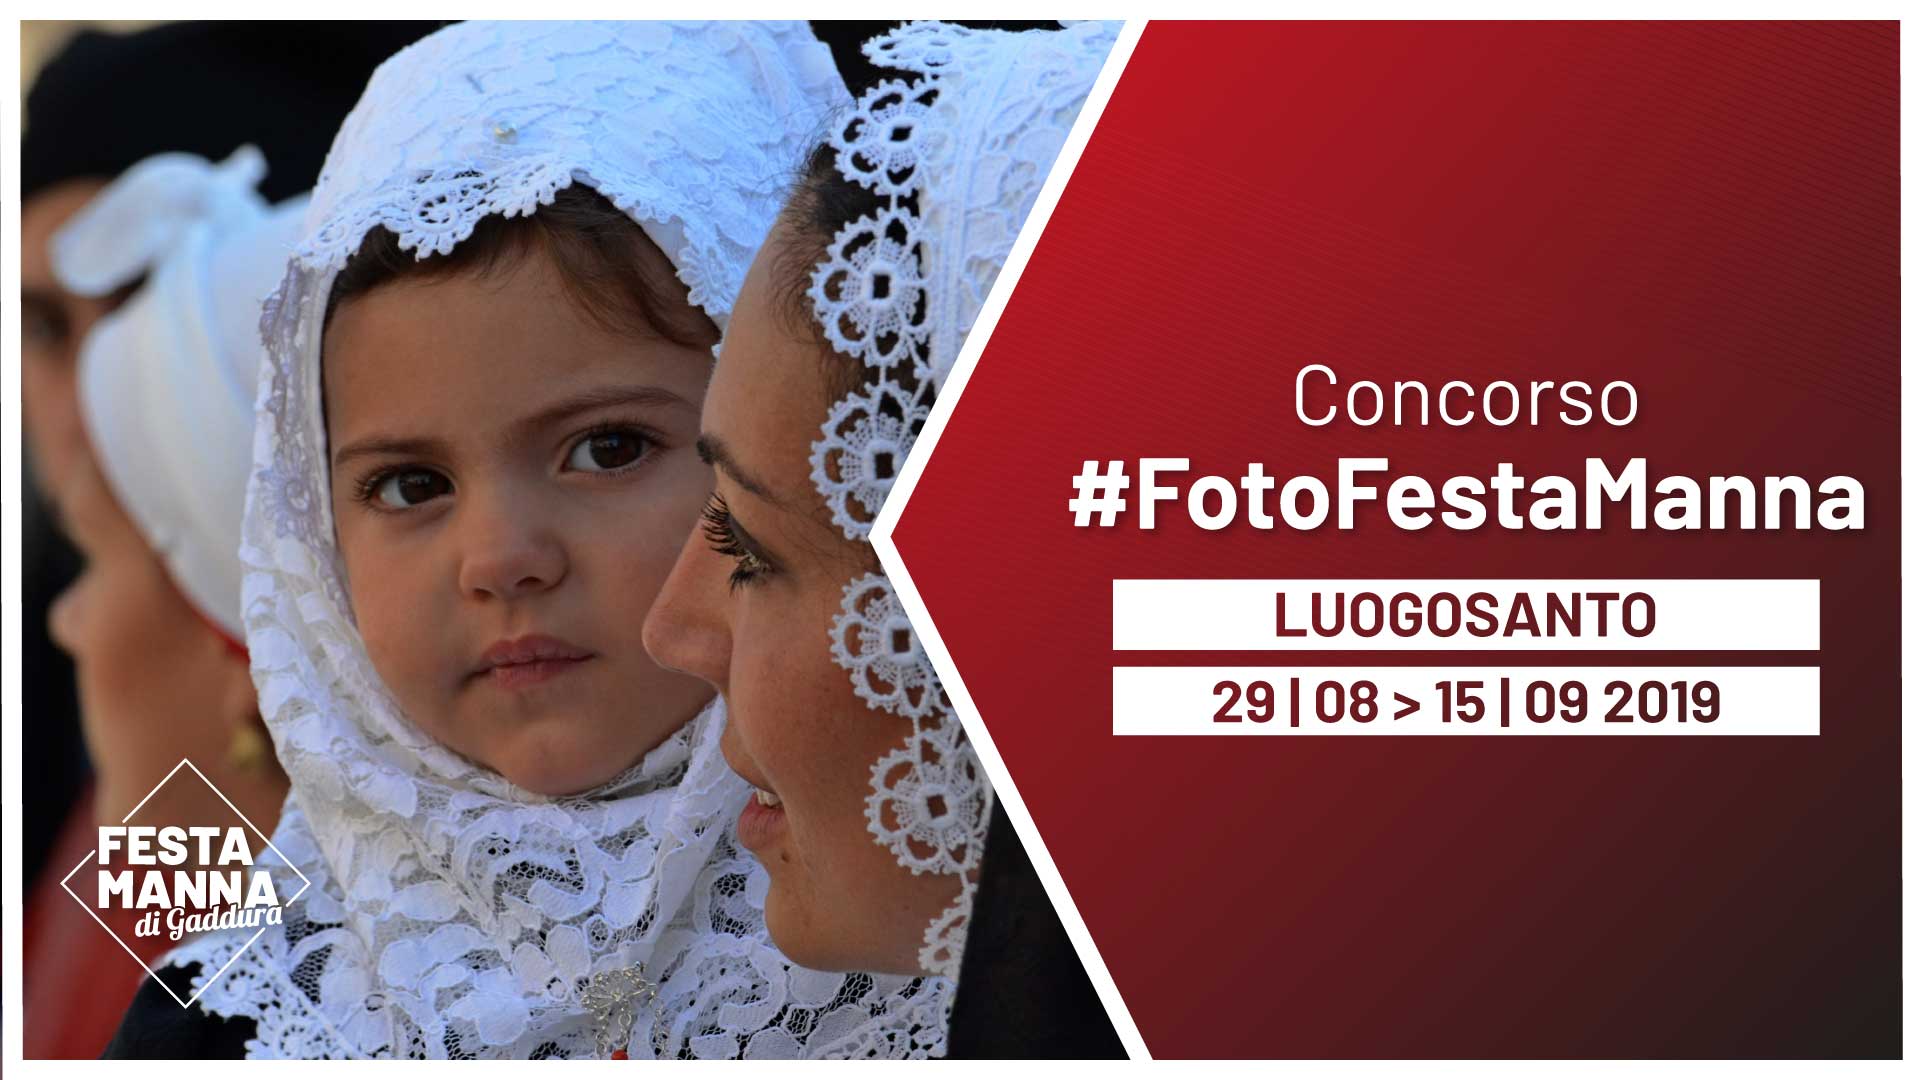 #FotoFestaManna, Auszeichnung für die beste Fotoreportage | Festa Manna di Gaddura 2019